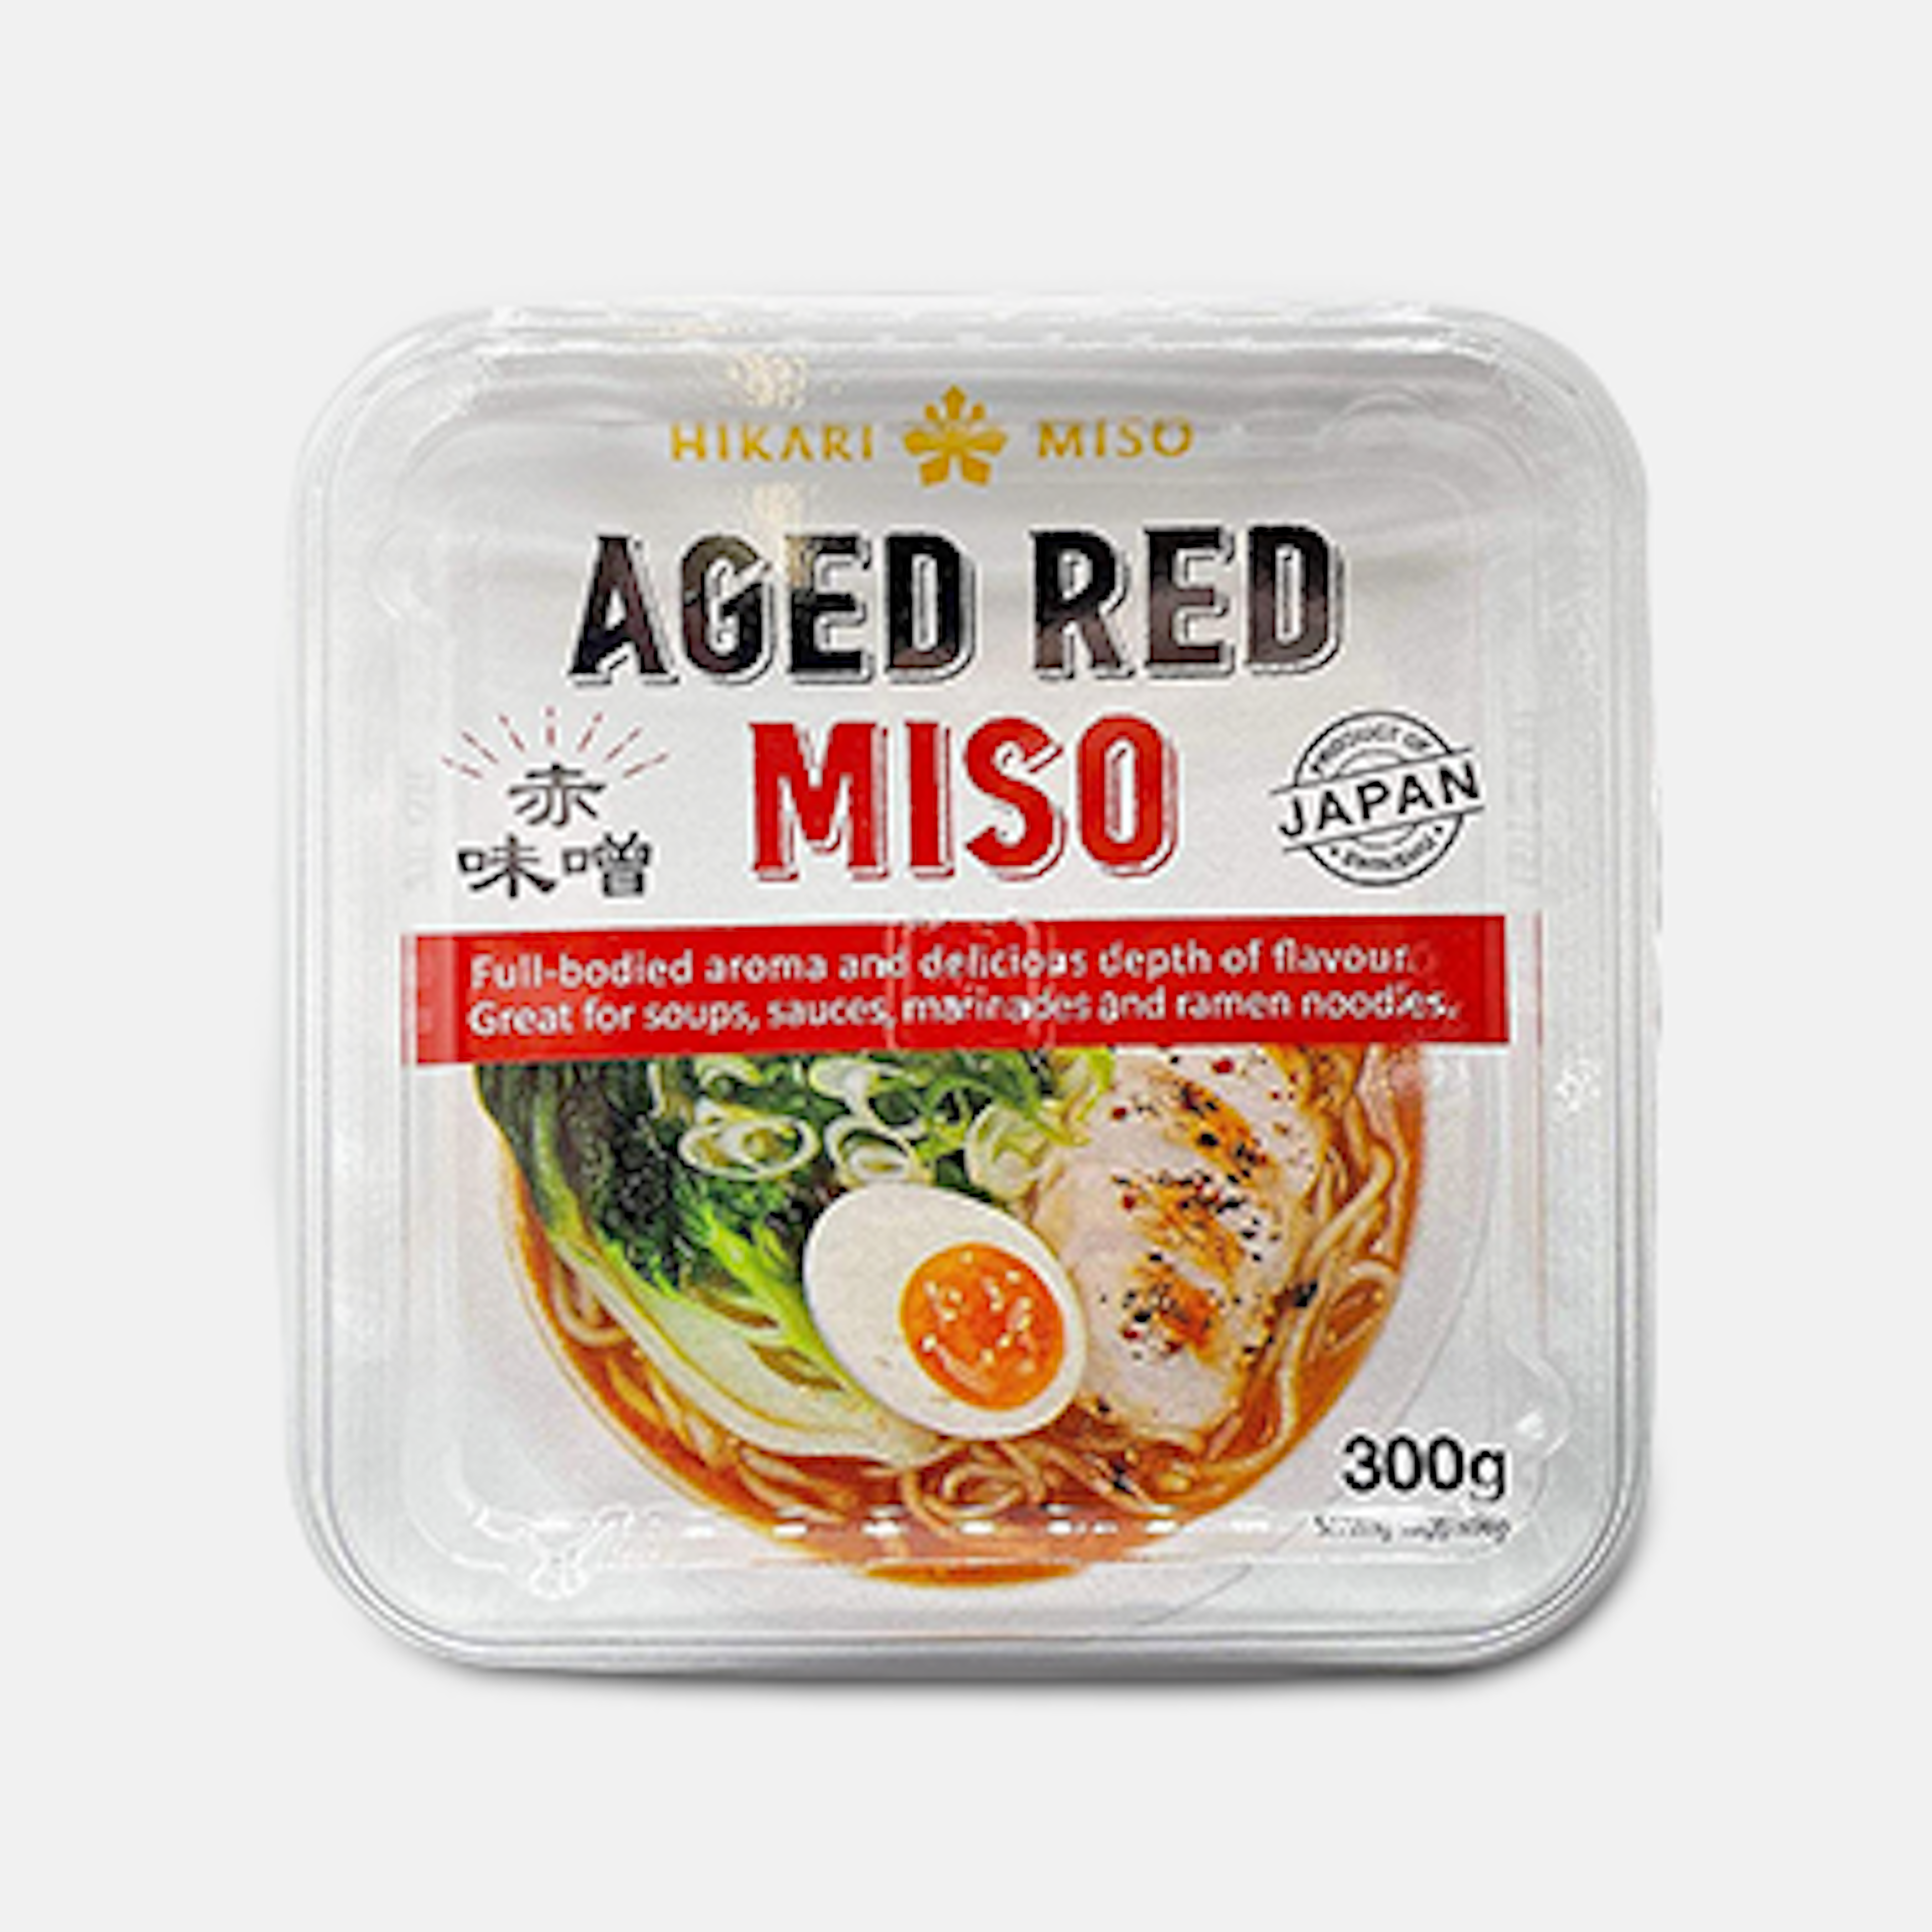 Hikari Miso Aged Red Miso Paste 300g - Tiefes Aroma: Die Aged Red Miso Paste zeichnet sich durch ihren reichen und kräftigen Geschmack aus.